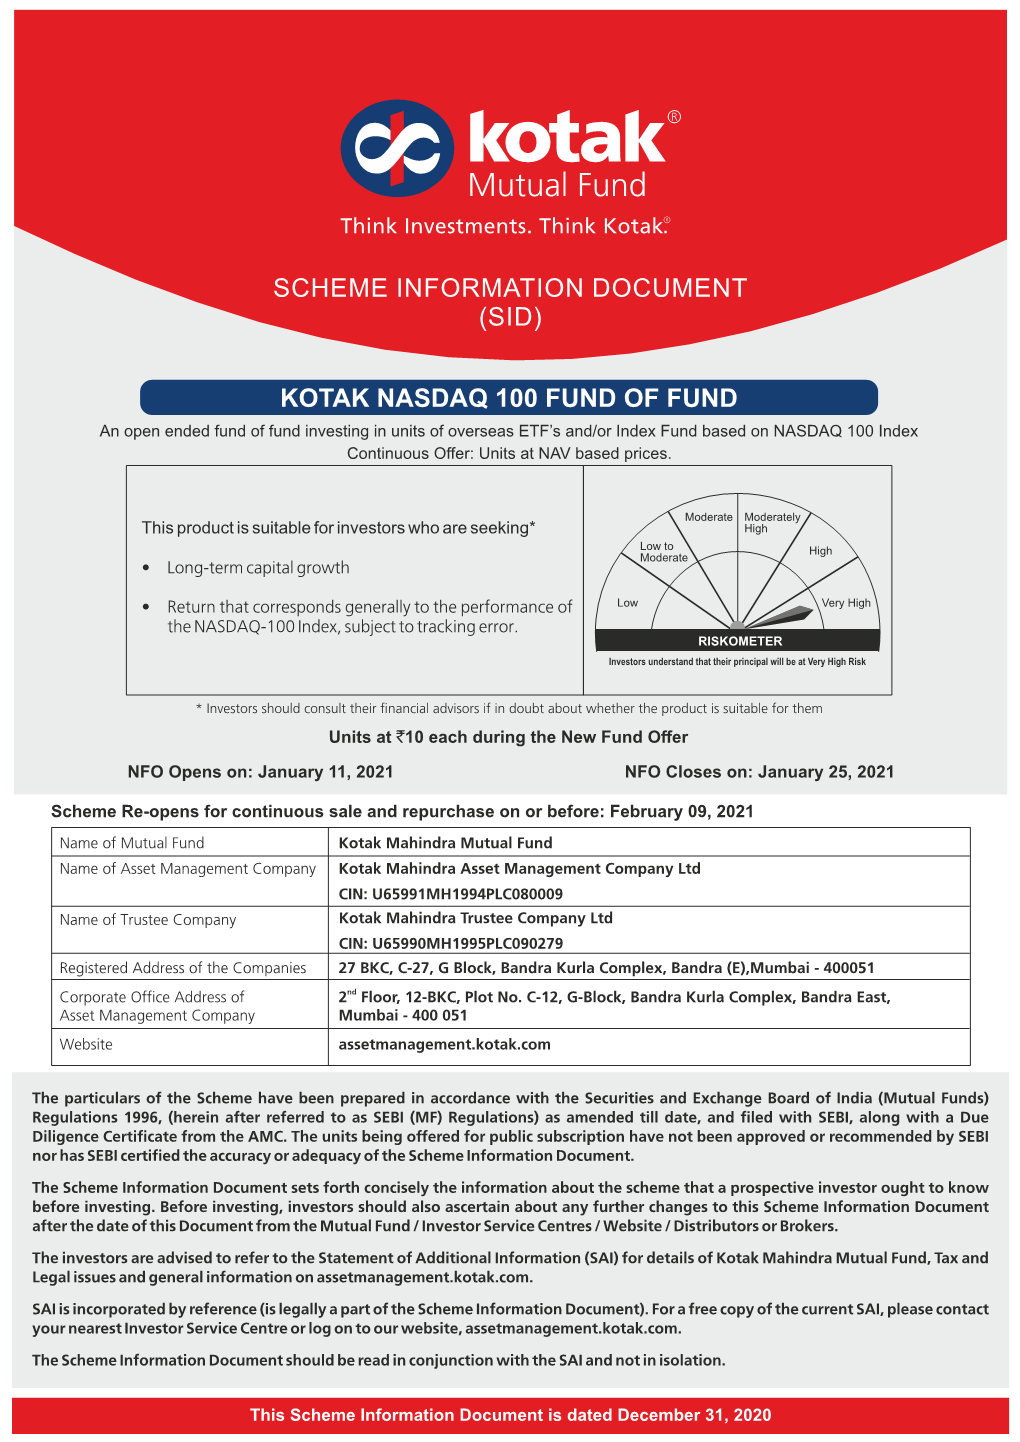 Kotak Nasdaq 100 Fund of Fund Scheme Information Document (Sid)